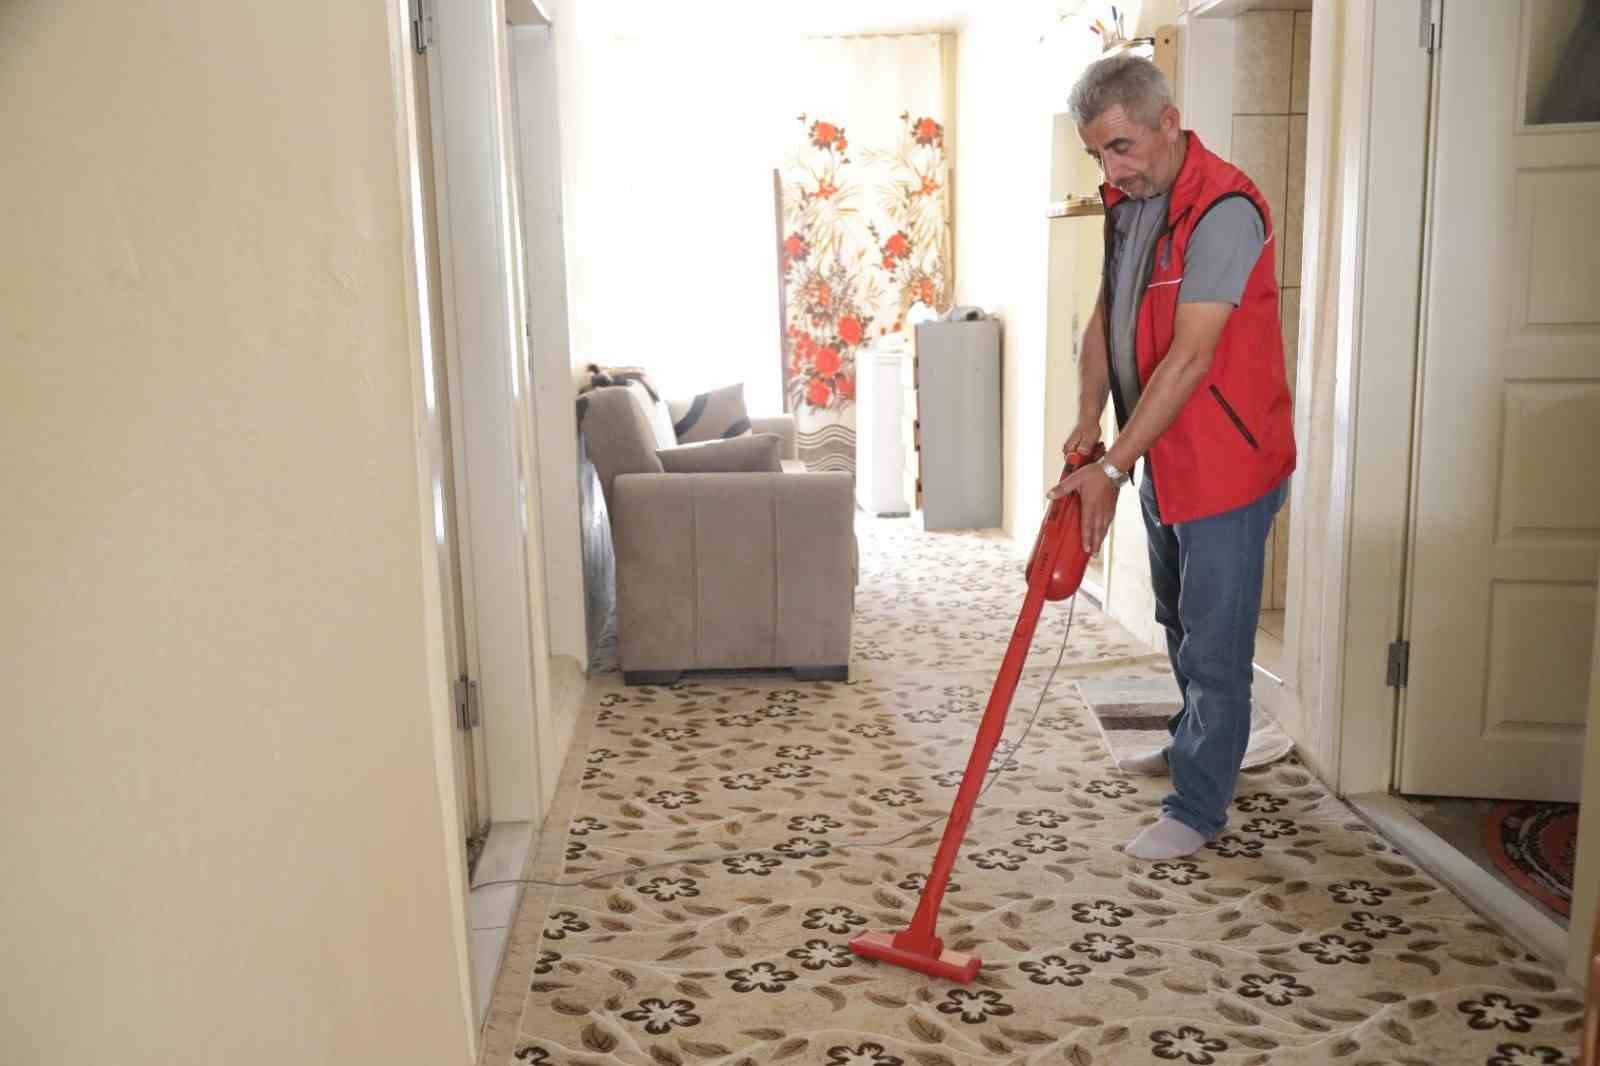 Aksaray Belediyesi 6 ayda bin 141 vatandaşın bakım ve temizliğini yaptı
